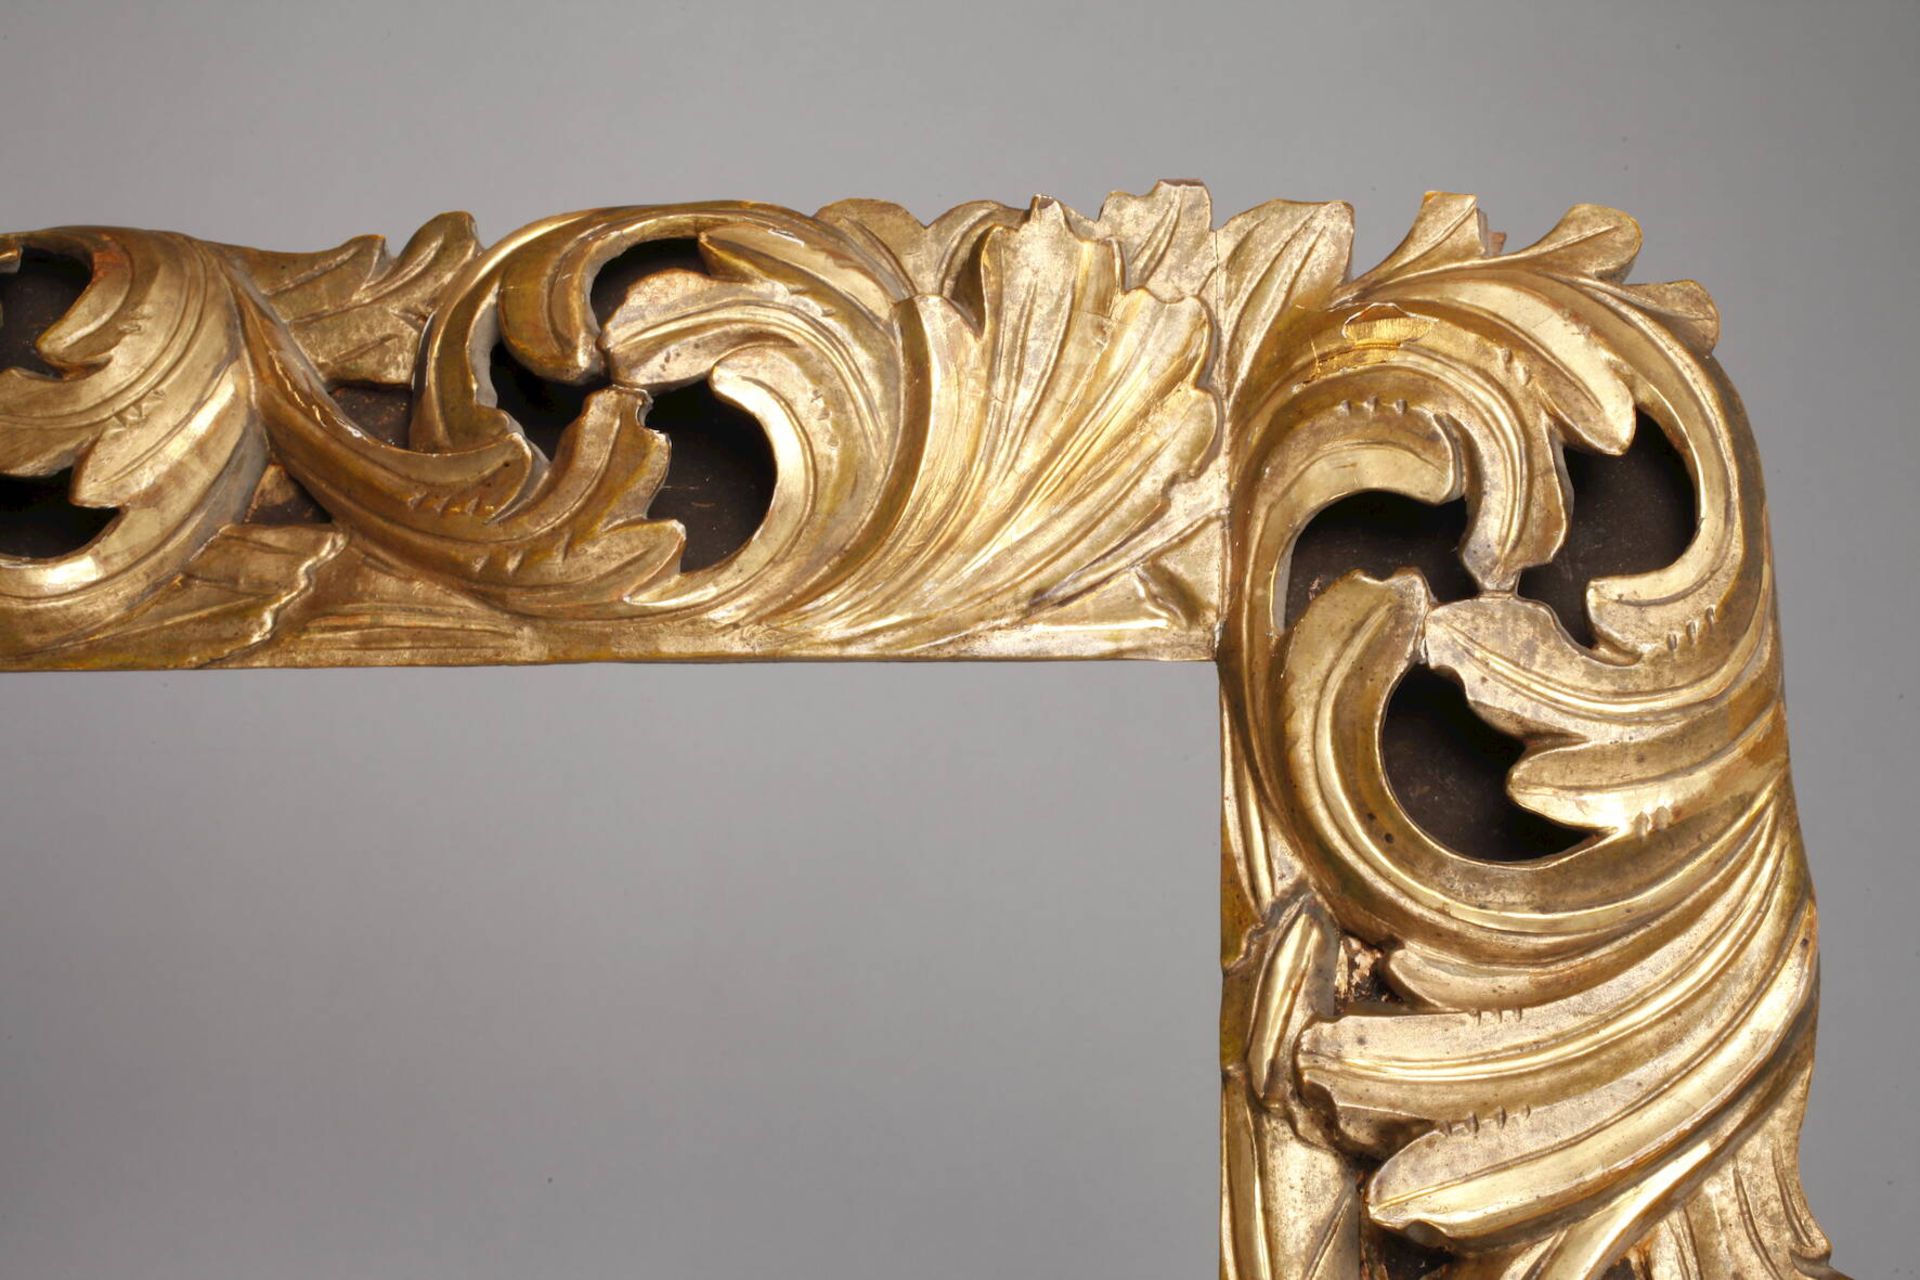 Qualitätsvoller Florentiner Rahmen19. Jh., aufwendig geschnitzt, hohl gearbeitet, blattvergoldet, - Bild 4 aus 5